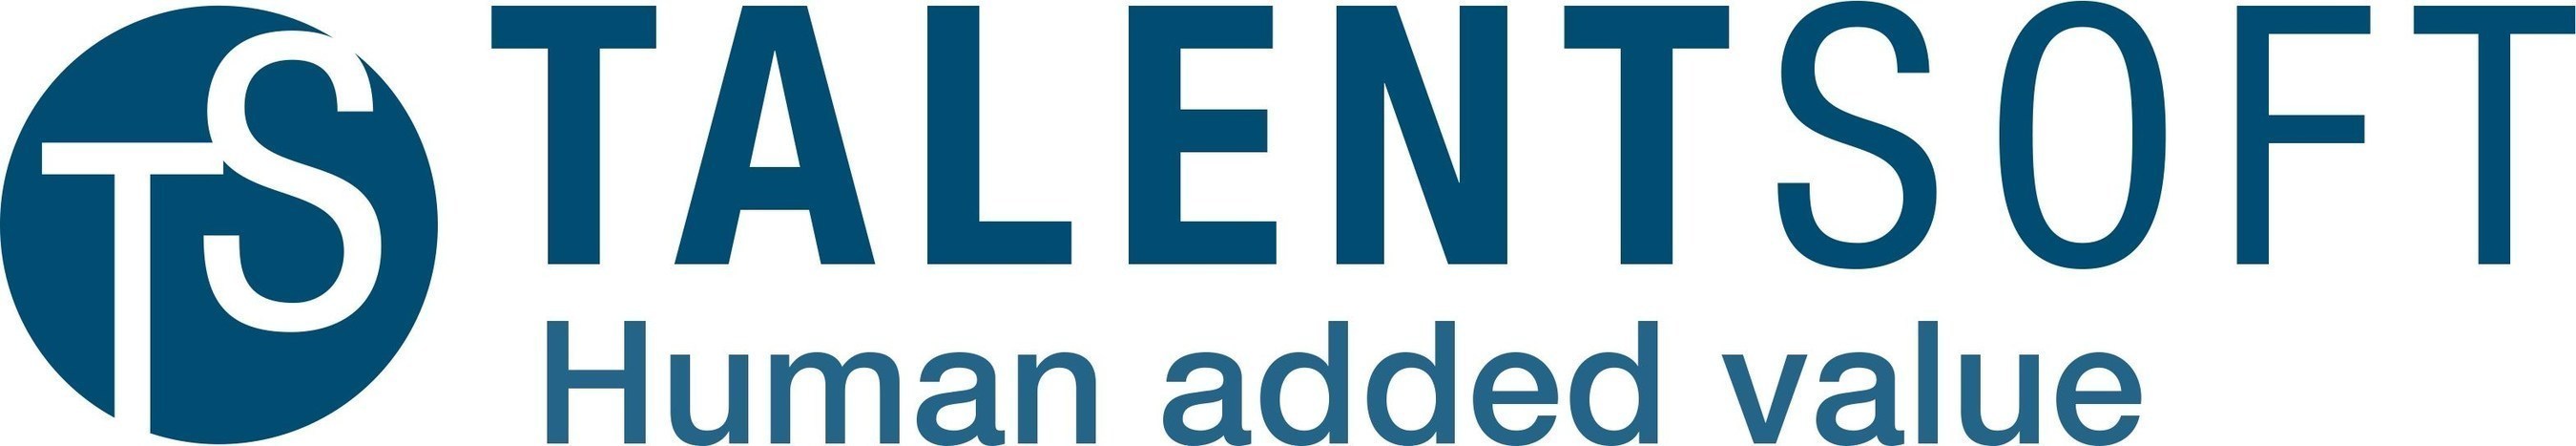 Talentsoft Logo (PRNewsFoto/Talentsoft) (PRNewsFoto/Talentsoft)